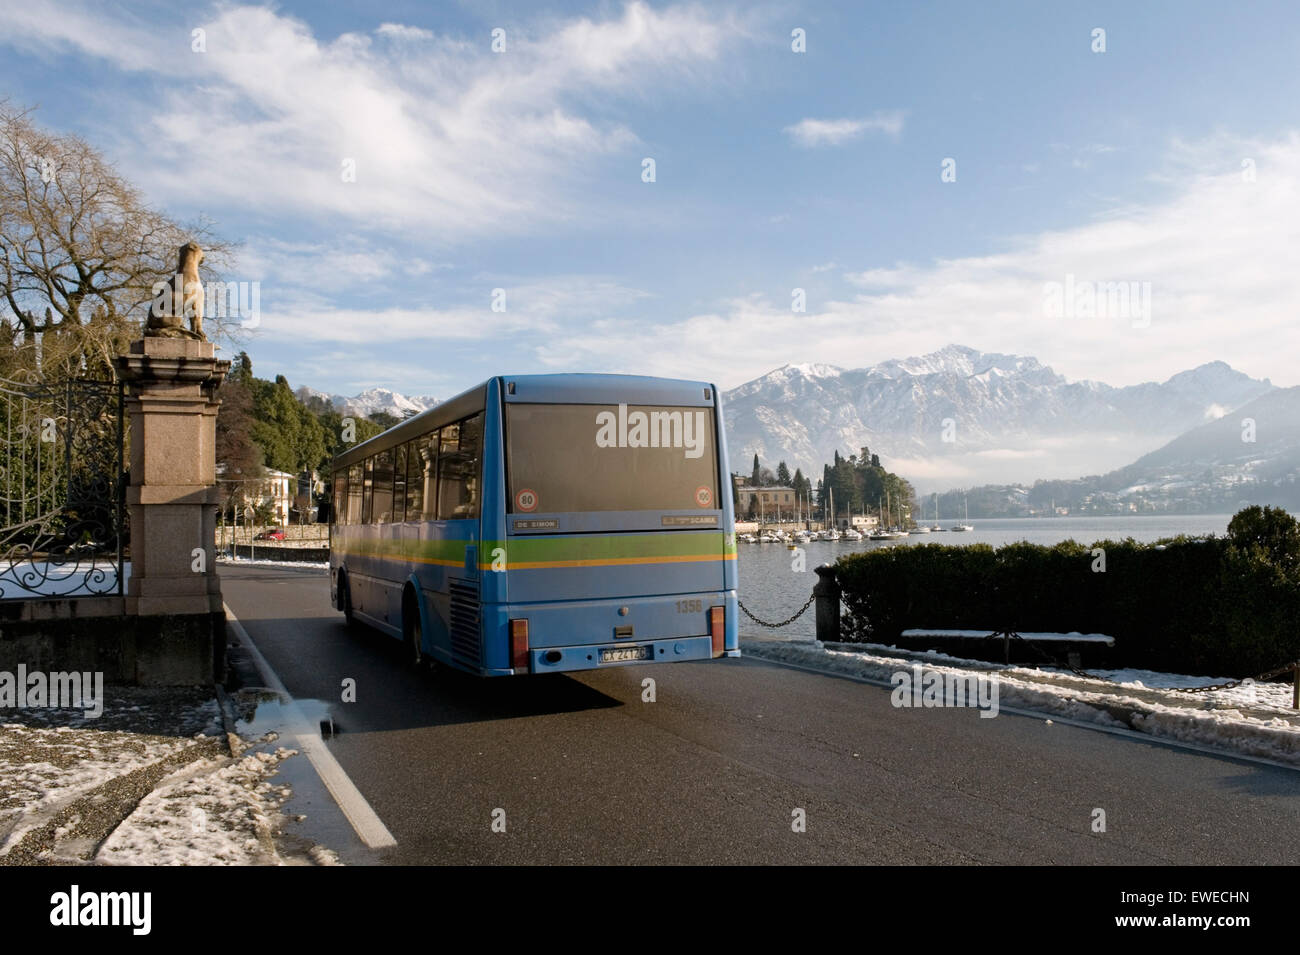 local bus service in wintertime, Tremezzo, Lake Como, Italy Stock Photo